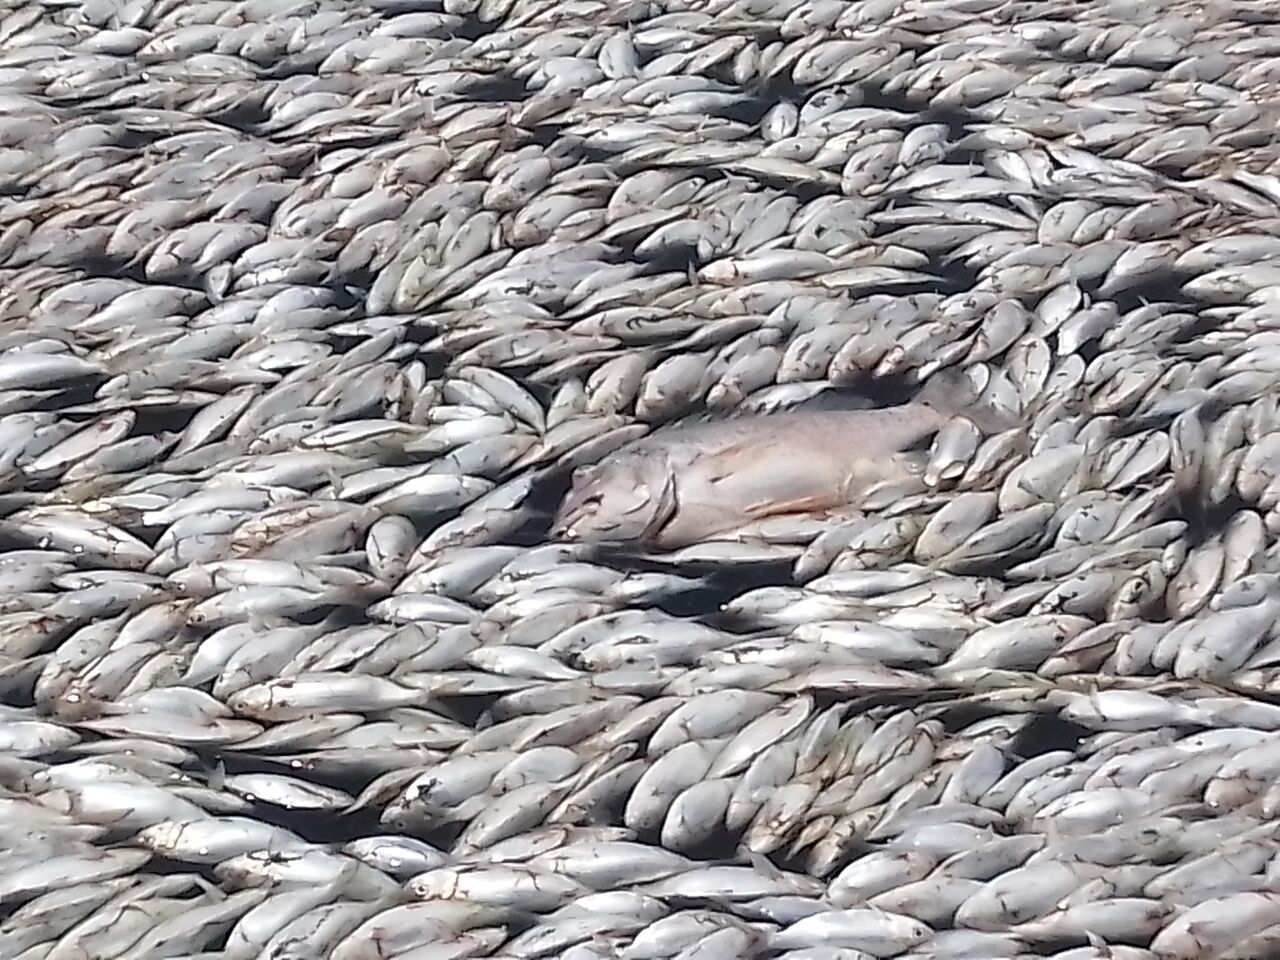 بررسی کارشناسی علت مرگ ماهیان در دریاچه نمک ماهشهر ادامه دارد